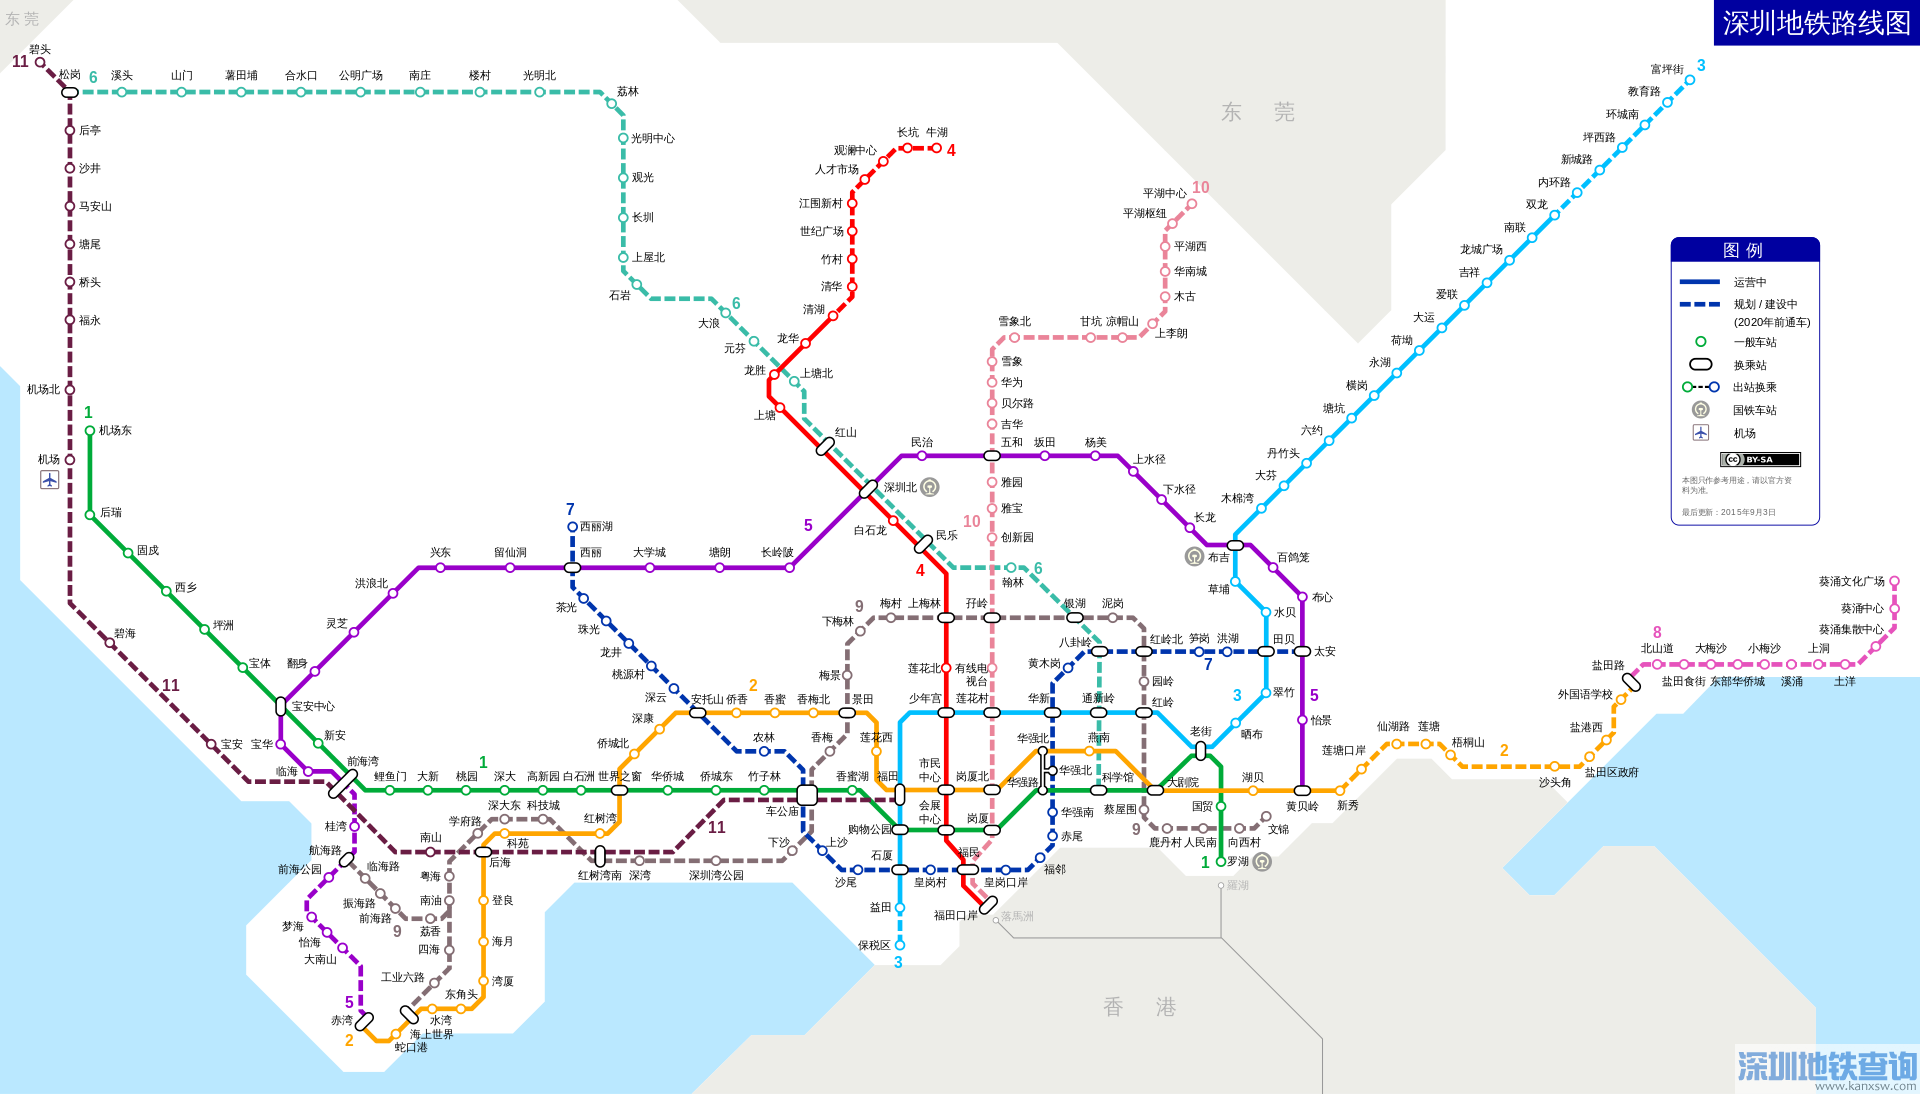 深圳地铁11号线线路图高清 18个站点出入口指南